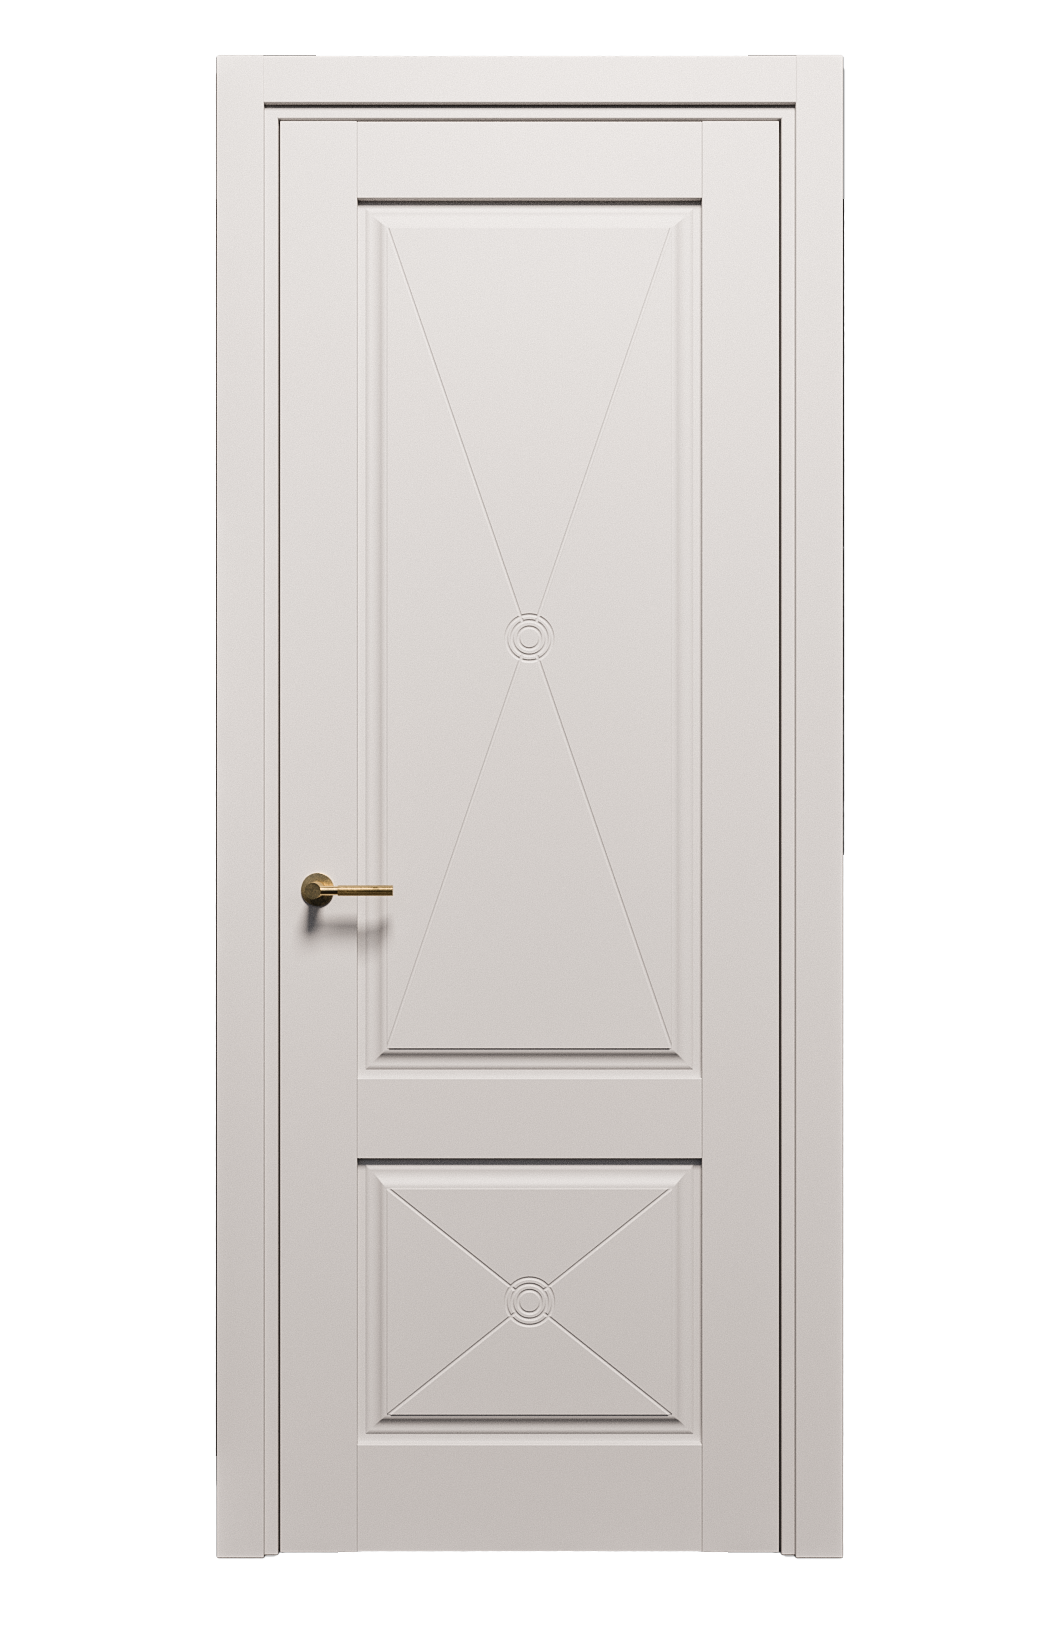 Межкомнатная дверь Сити X-design глухая эмаль ral 9003 25190